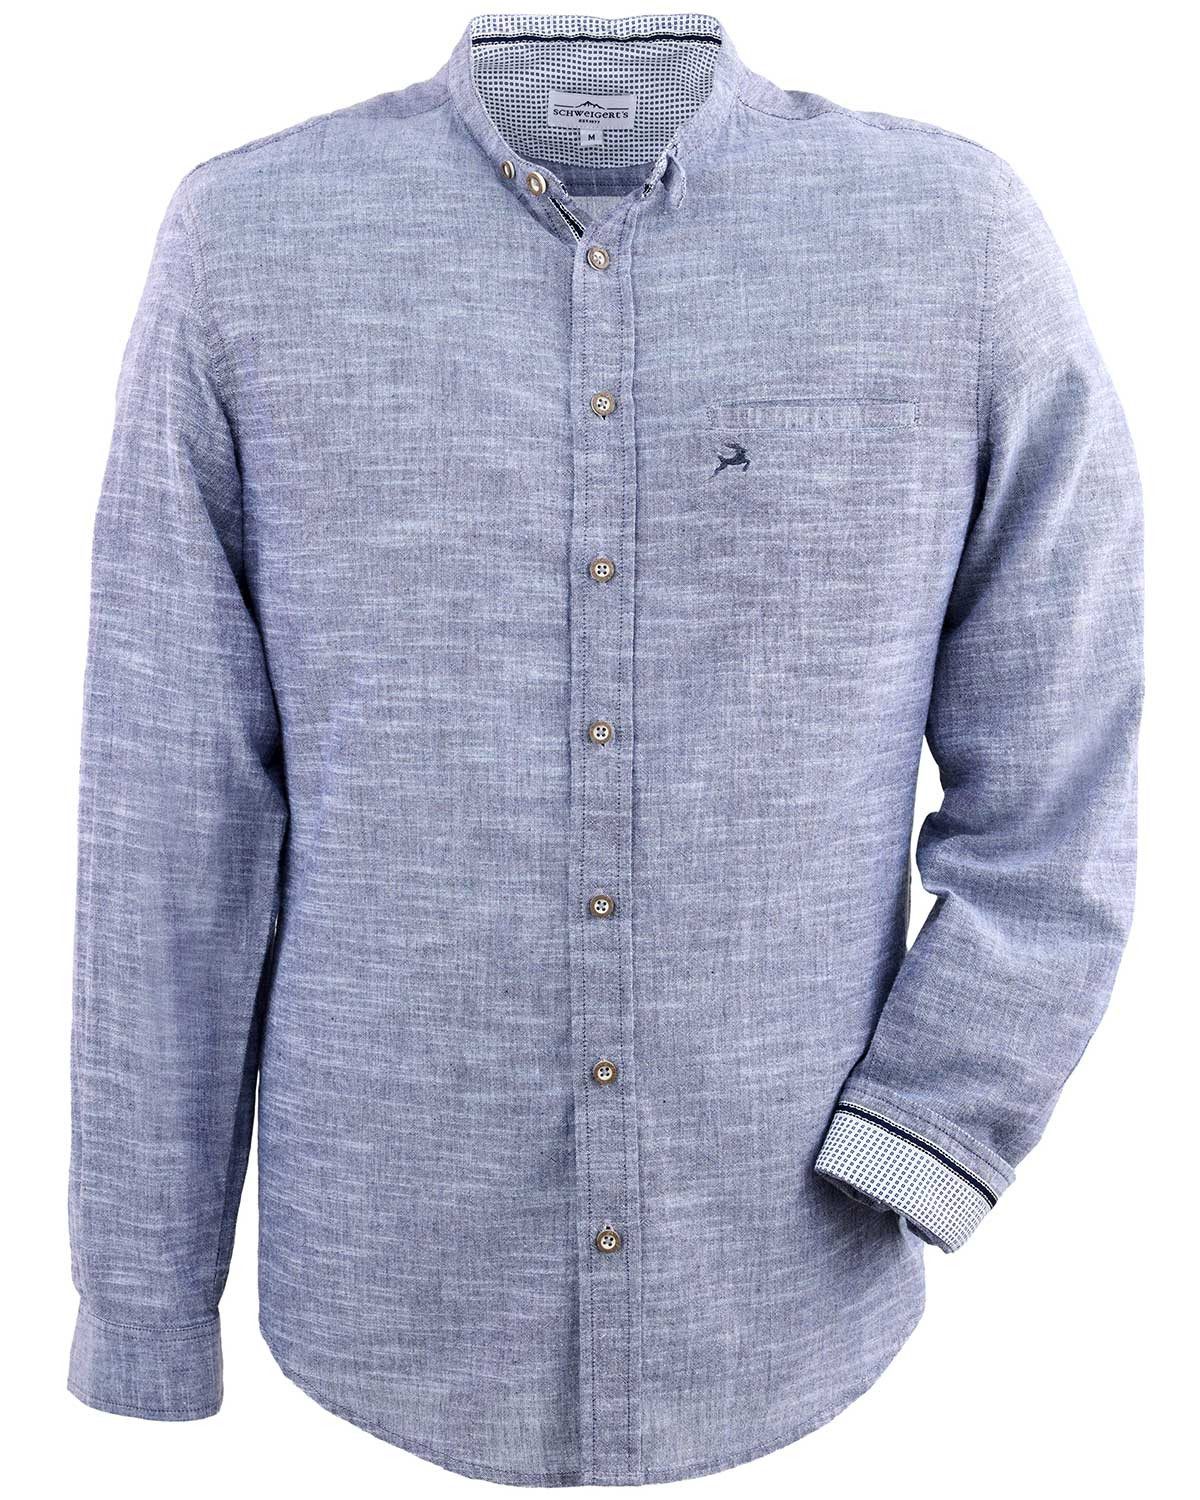 Maddox Trachtenhemd Trachtenhemd mit Stehkragen - Hemd-106, Blau